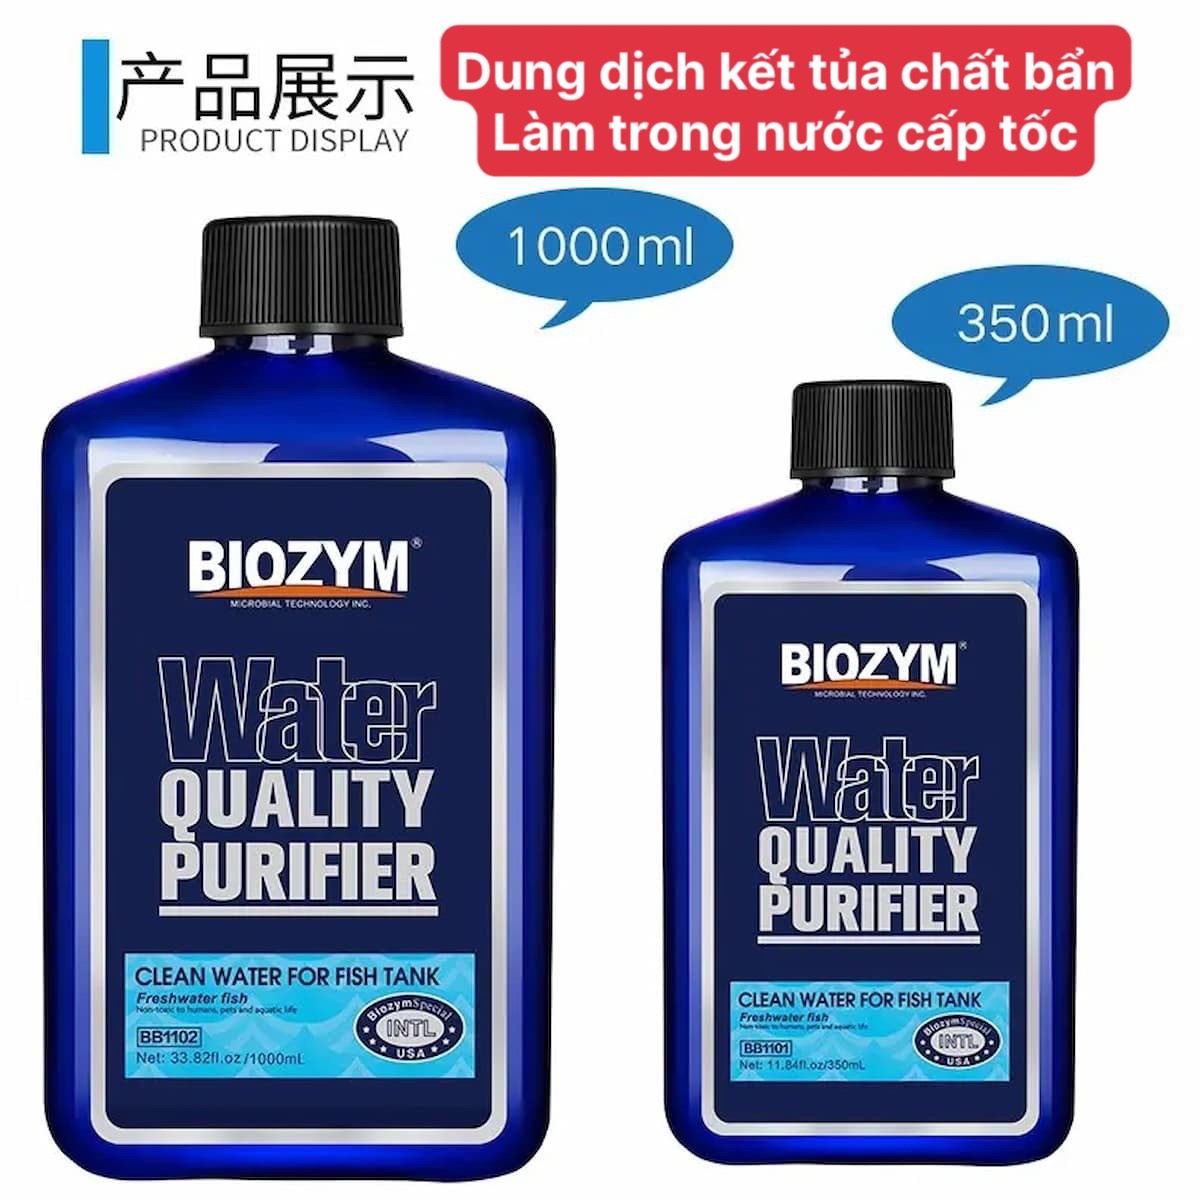 Biozym Water Quality Purifier làm trong nước hồ cá cao cấp